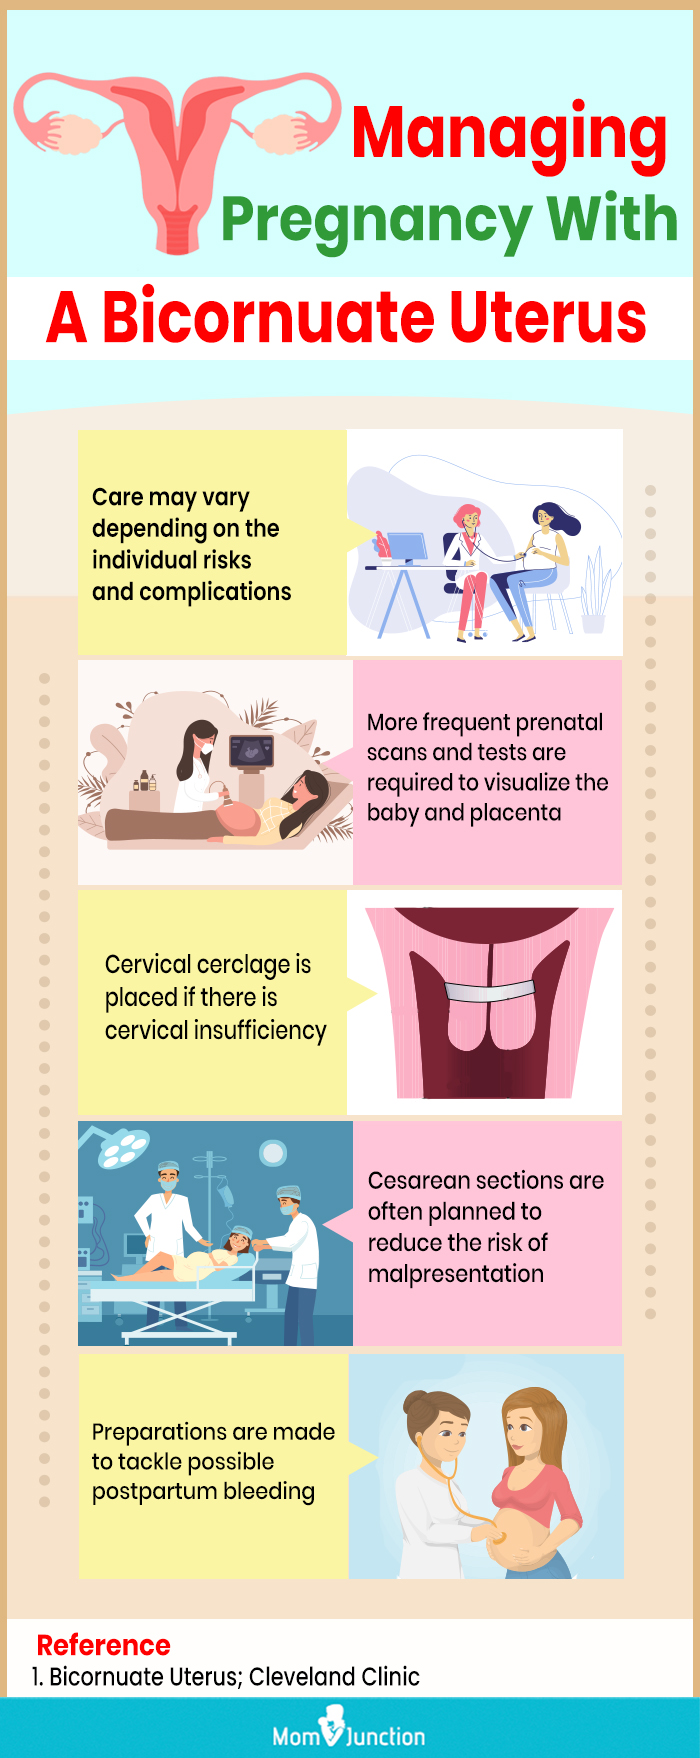 managing pregnancy with a bicornuate uterus [infographic]